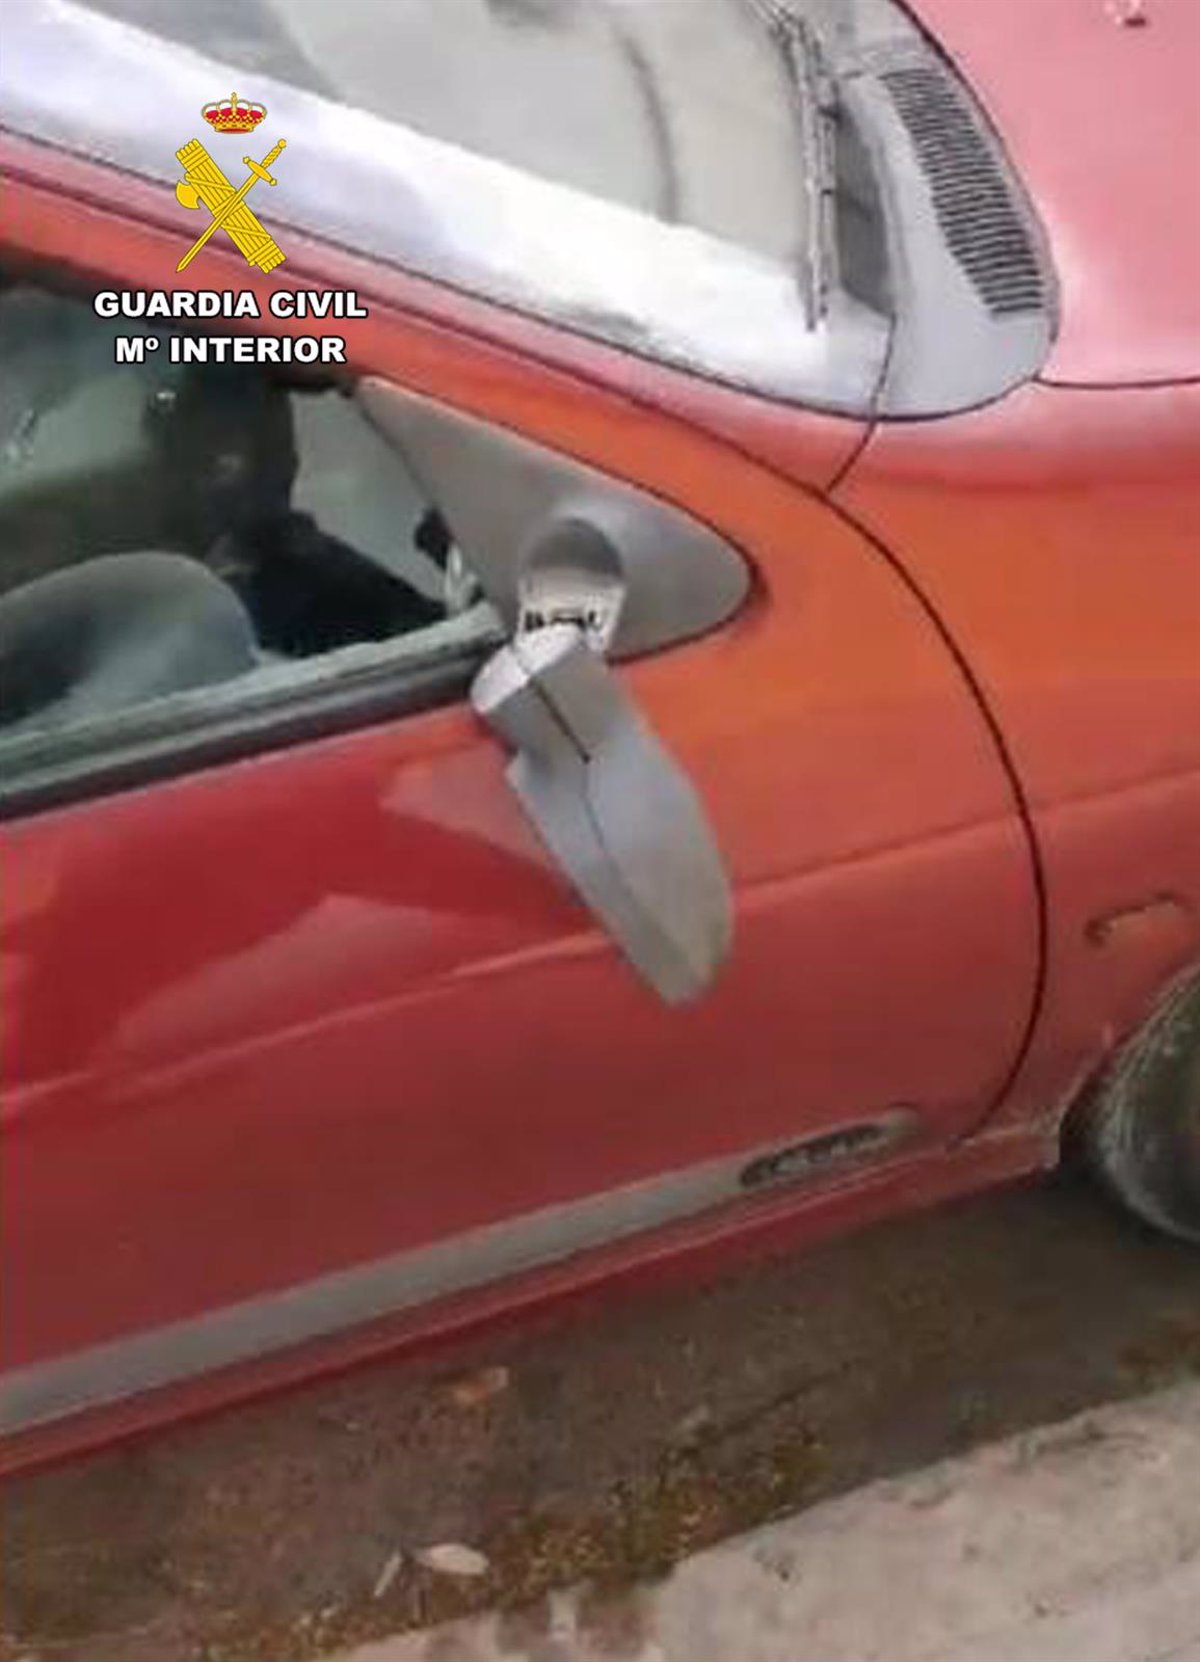 La Guardia Civil investiga a un menor en Cieza (Murcia) por romper retrovisores de vehículos